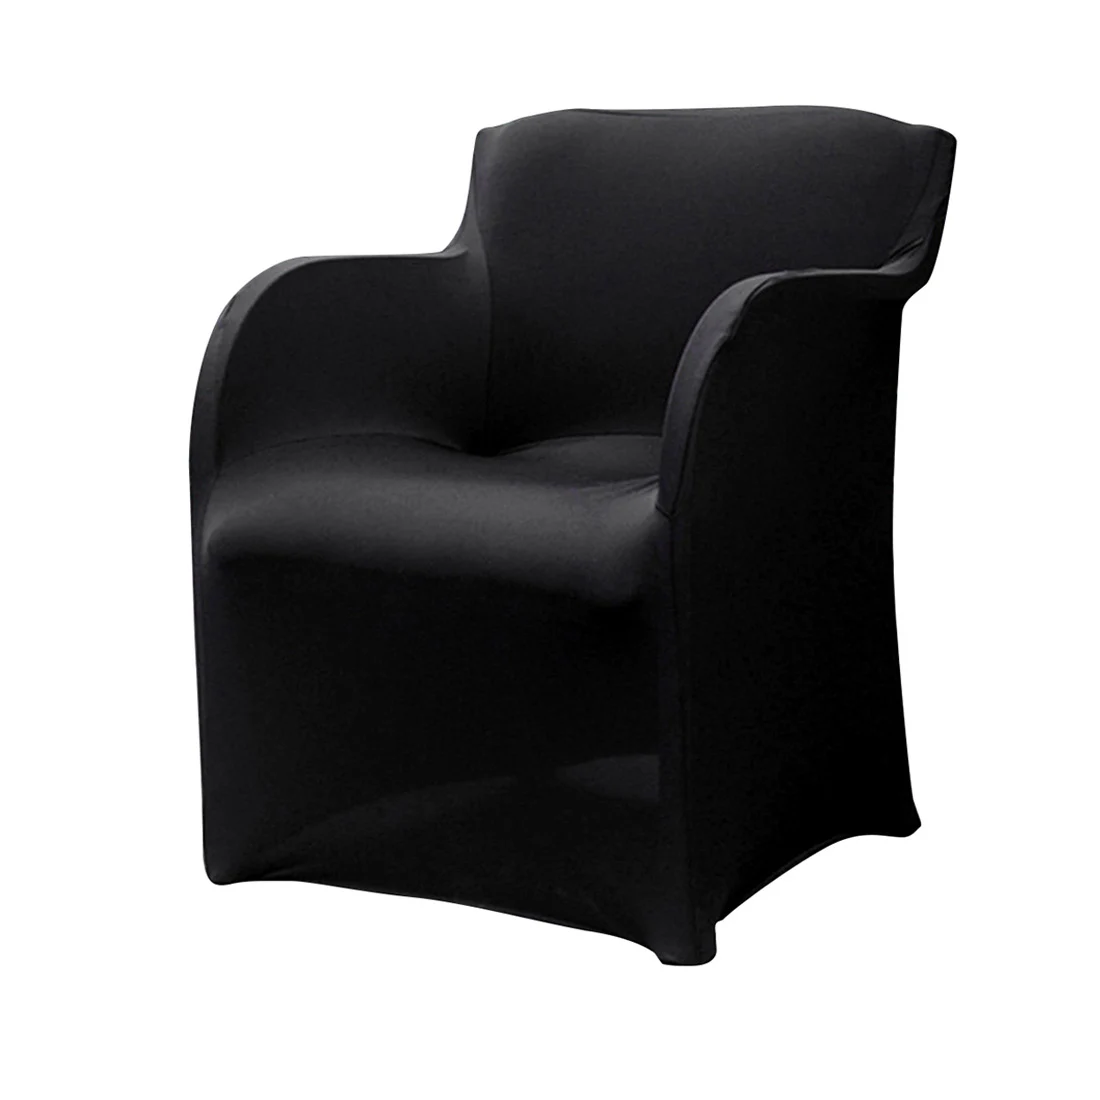 4 шт./лот чехлы из спандекса для кресла эластичные чехлы на кресла кресло крышка стула для свадебной вечеринки Чехлы 73*55 см - Цвет: Black